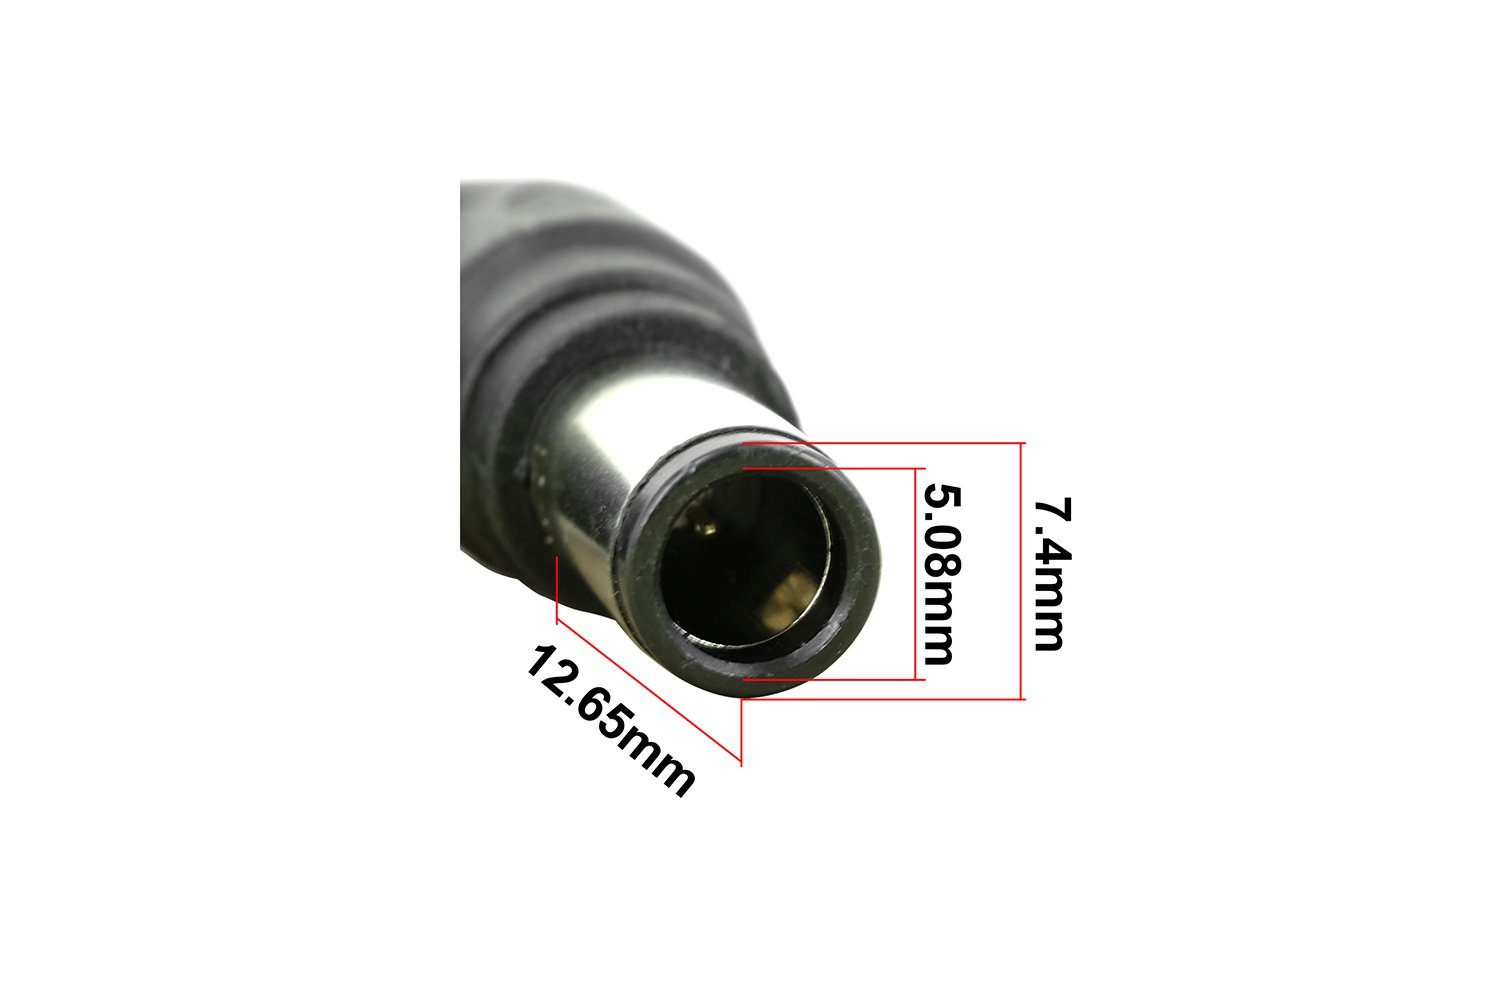 DC-Stromanschlussspitze PowerSmart Mikrochip C27 mit mm) für integriertem x Dell HEAD27N (7,4 Batterie-Verbindungskabel, 5,08